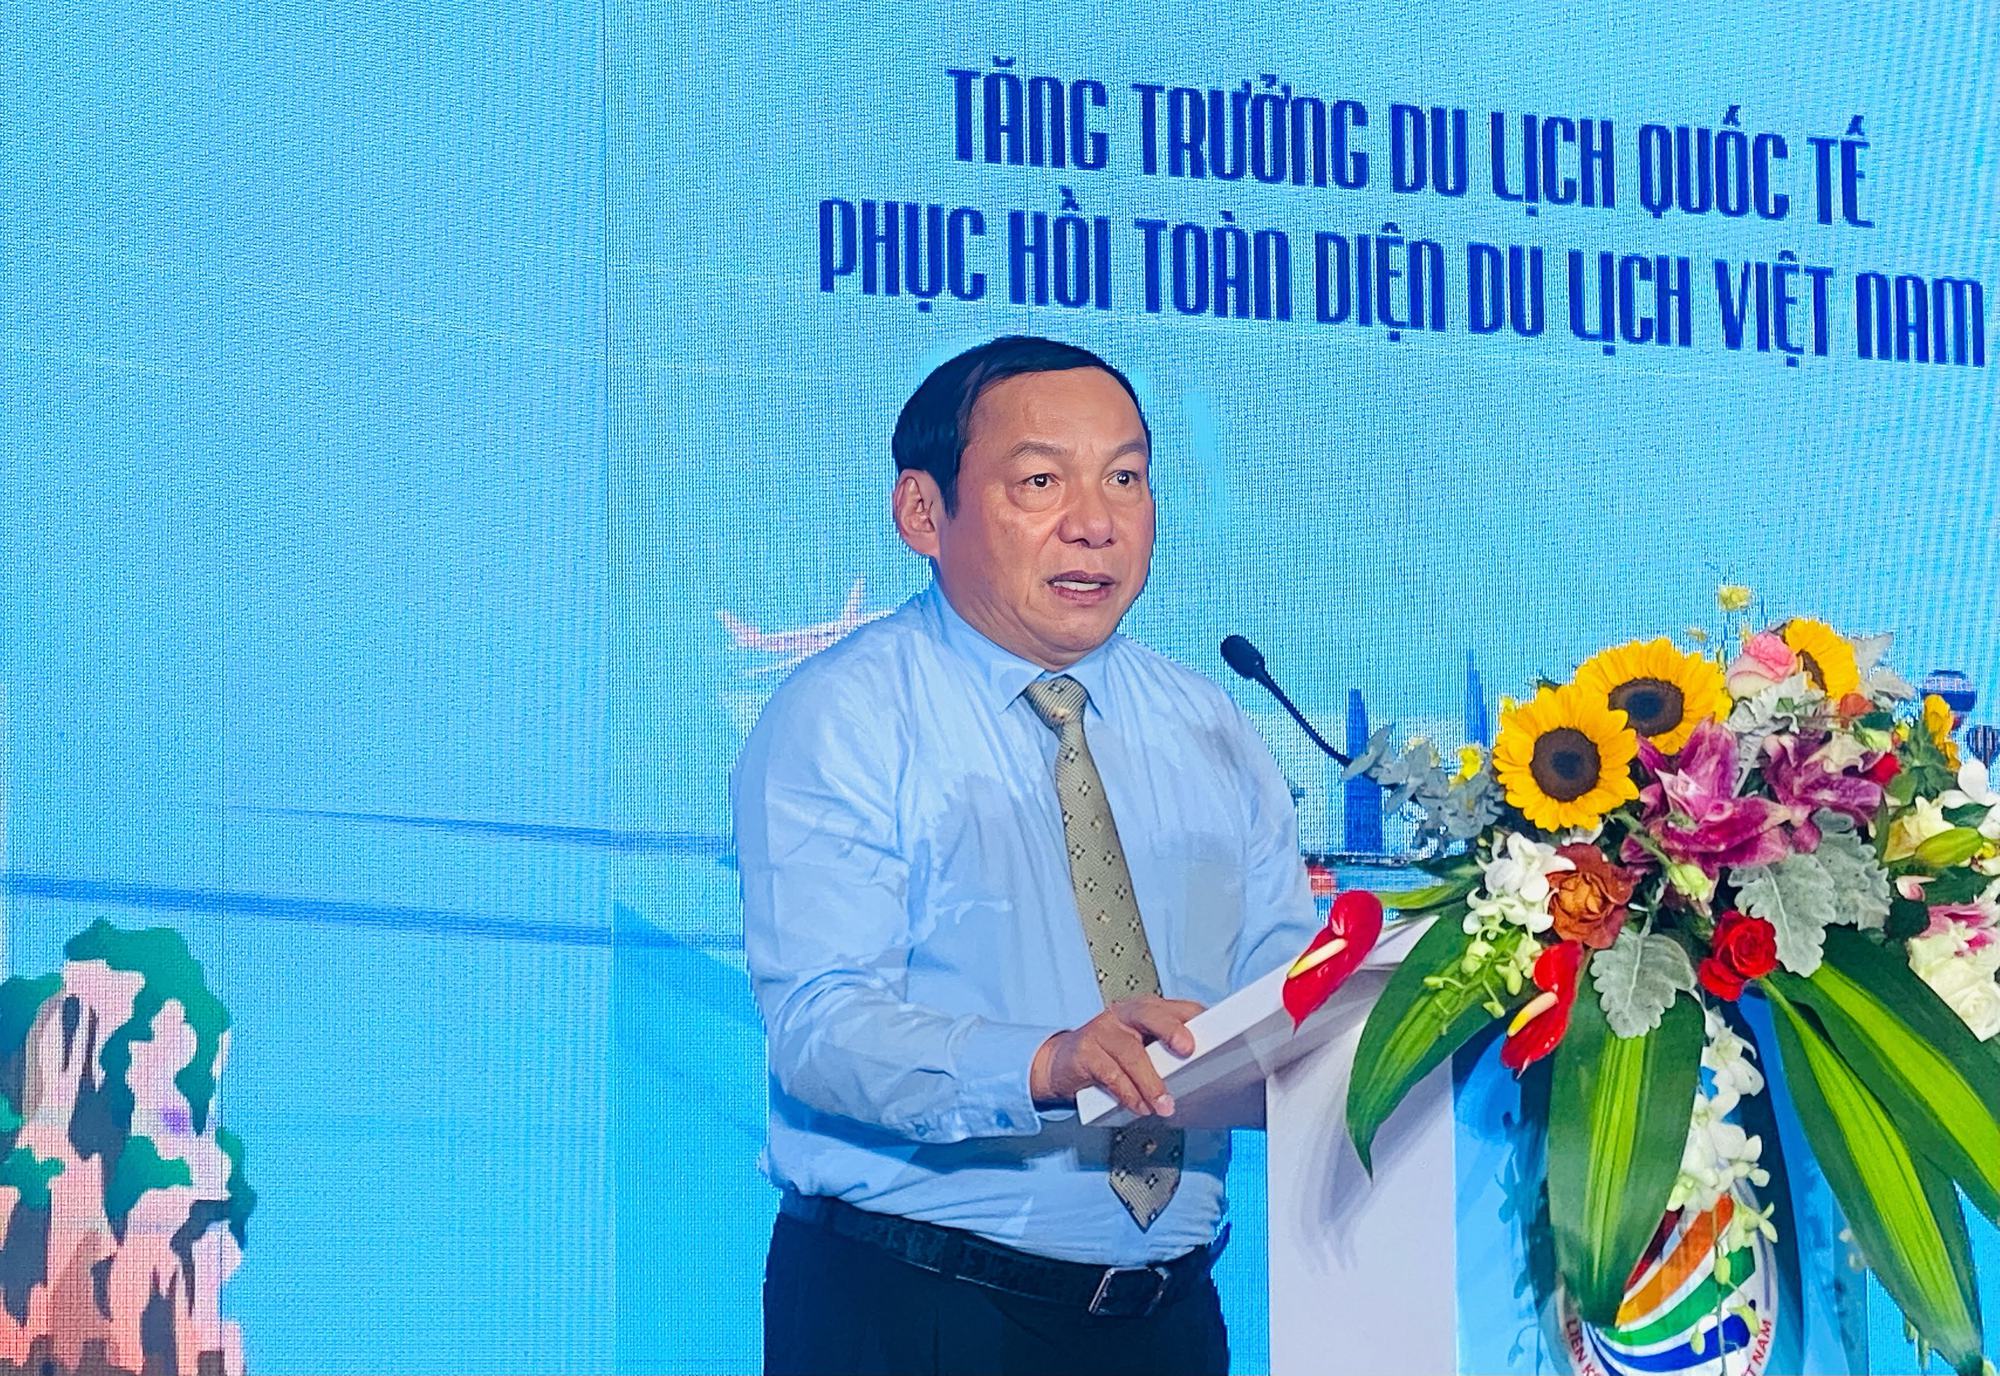 Bộ trưởng Bộ VHTTDL Nguyễn Văn Hùng: “Du lịch phải gắn chặt chẽ với yếu tố văn hóa, phải khai thác triệt để nguồn tài nguyên văn hóa đa dạng của Việt Nam” - Ảnh 1.